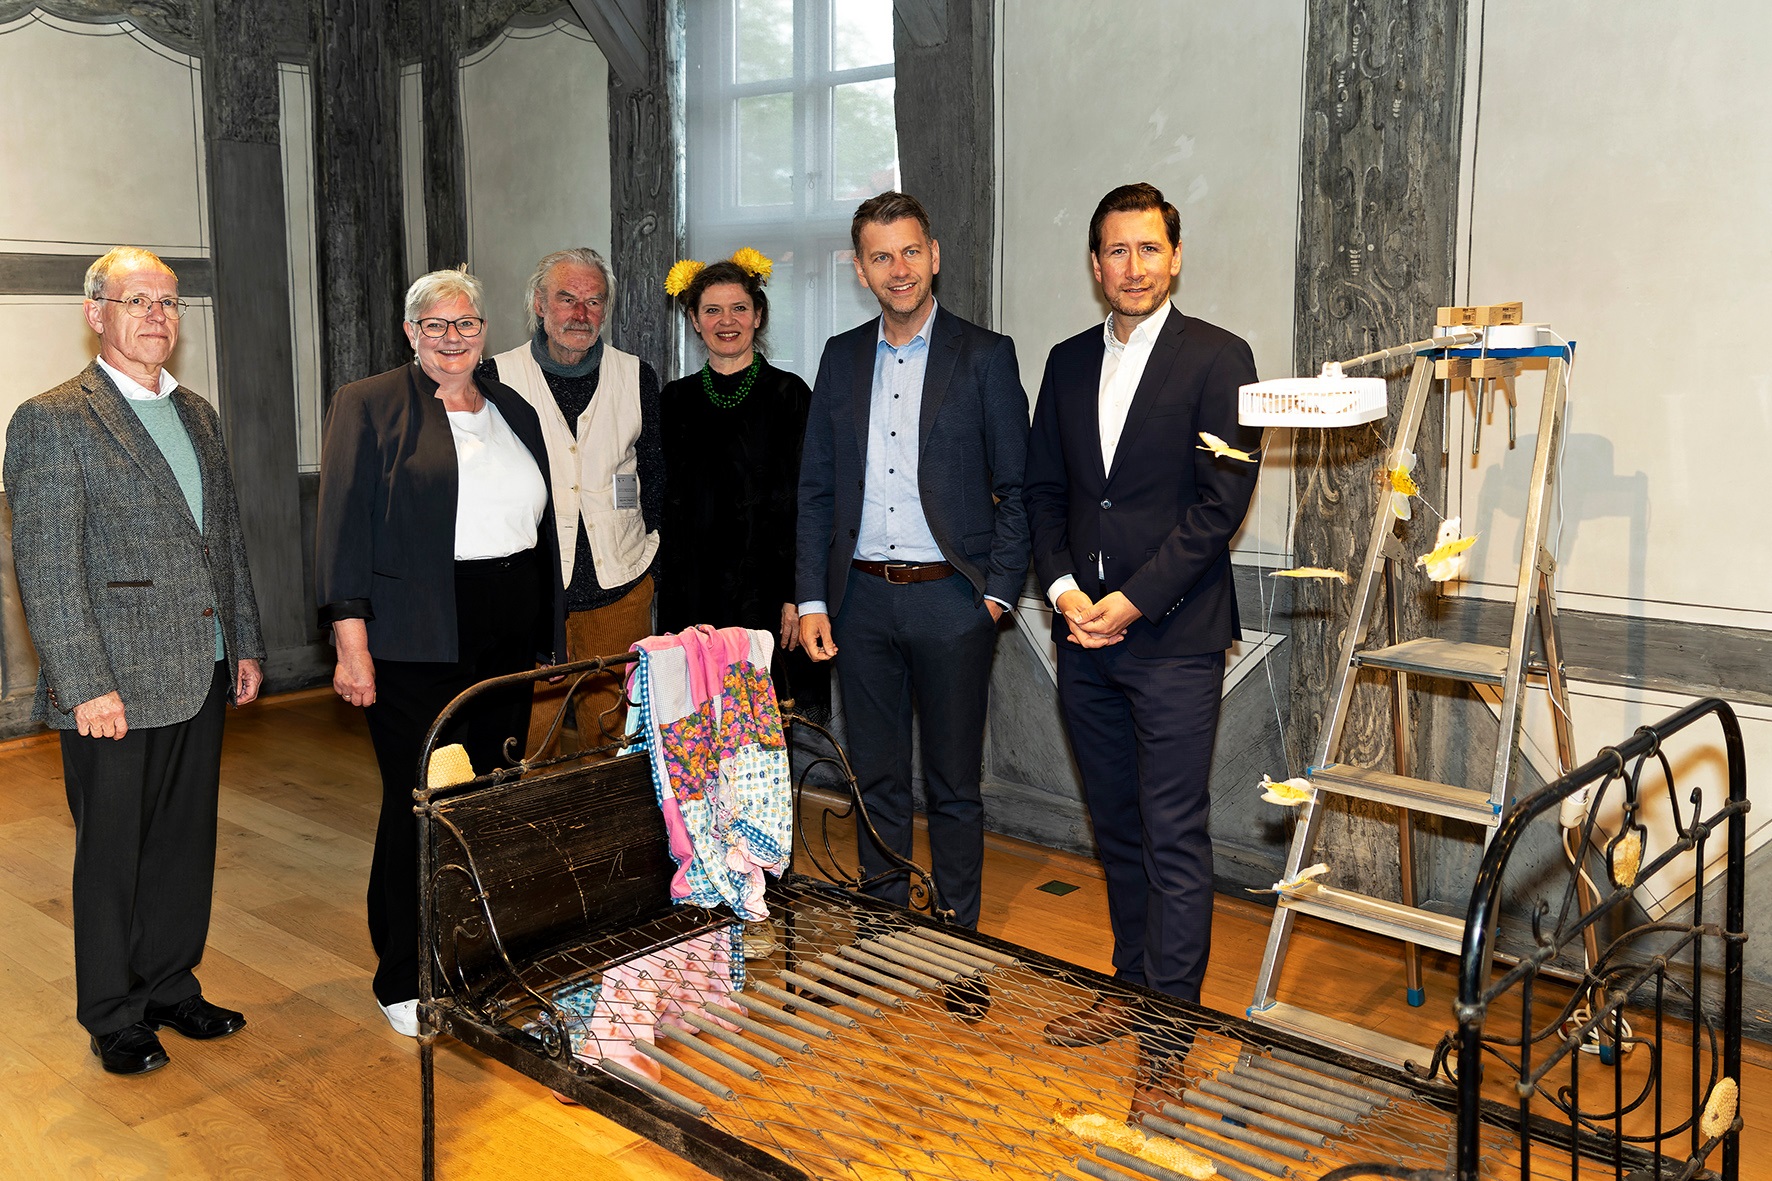 Die Oberbürgermeister der Städte Wolfsburg und Halberstadt eröffnen die Ausstellung Opus35 der Künstler ilka Leukefeld & Olaf Wegewitz